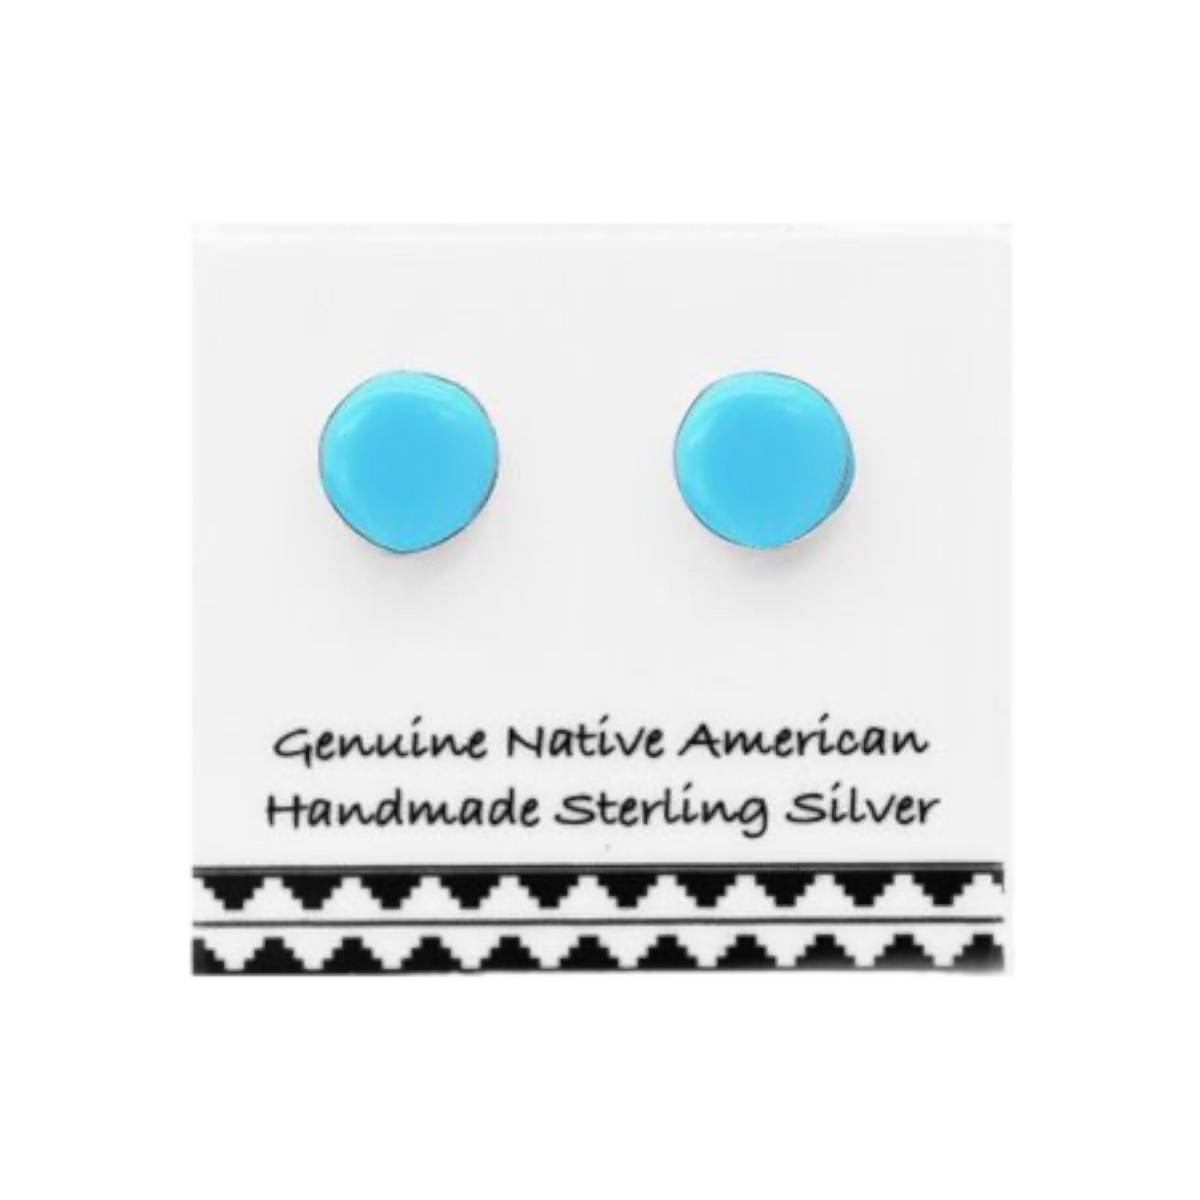 5mm Genuine Sleeping Beauty Turquoise Stud Earrings, Sterling Silver, Authentic Navajo Native American Handmade, Nickel Free